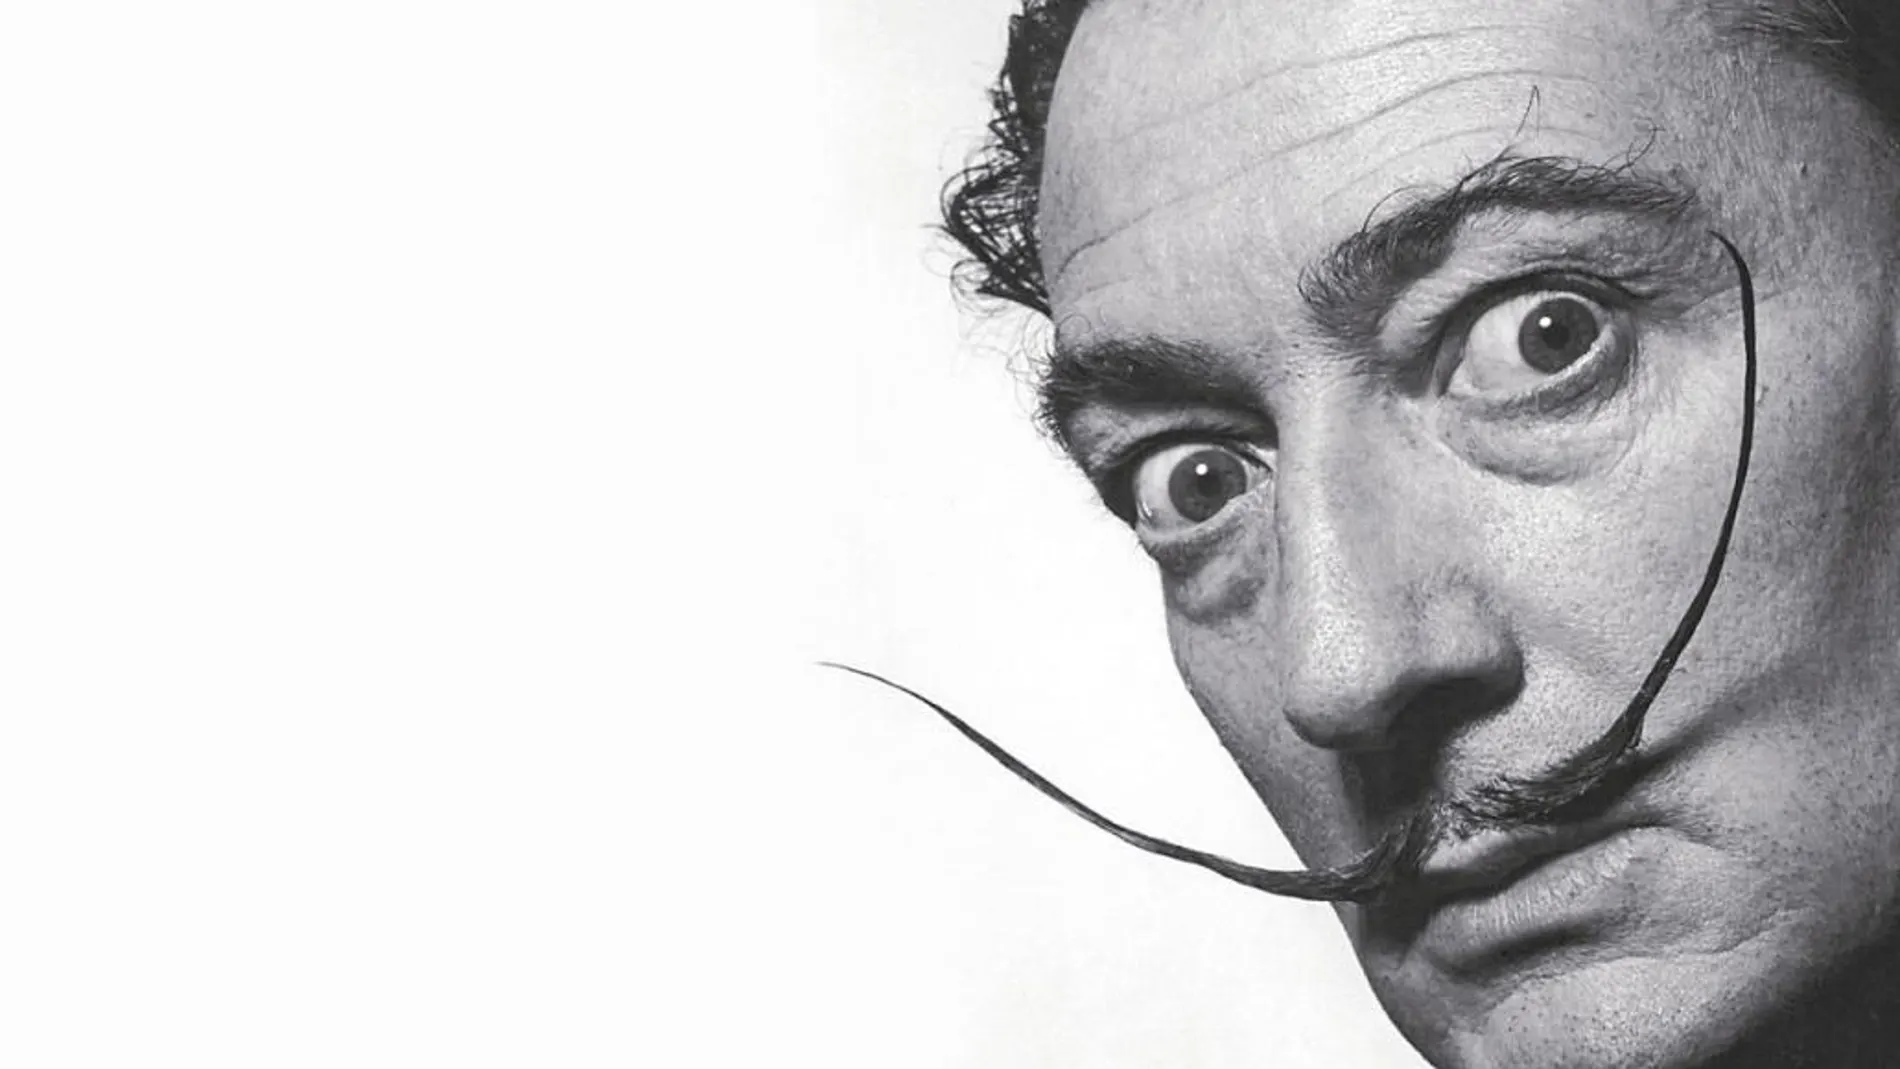 El nuevo espacio con obras de Dalí espera poder abrir sus puertas en el segundo semestre del año que viene.